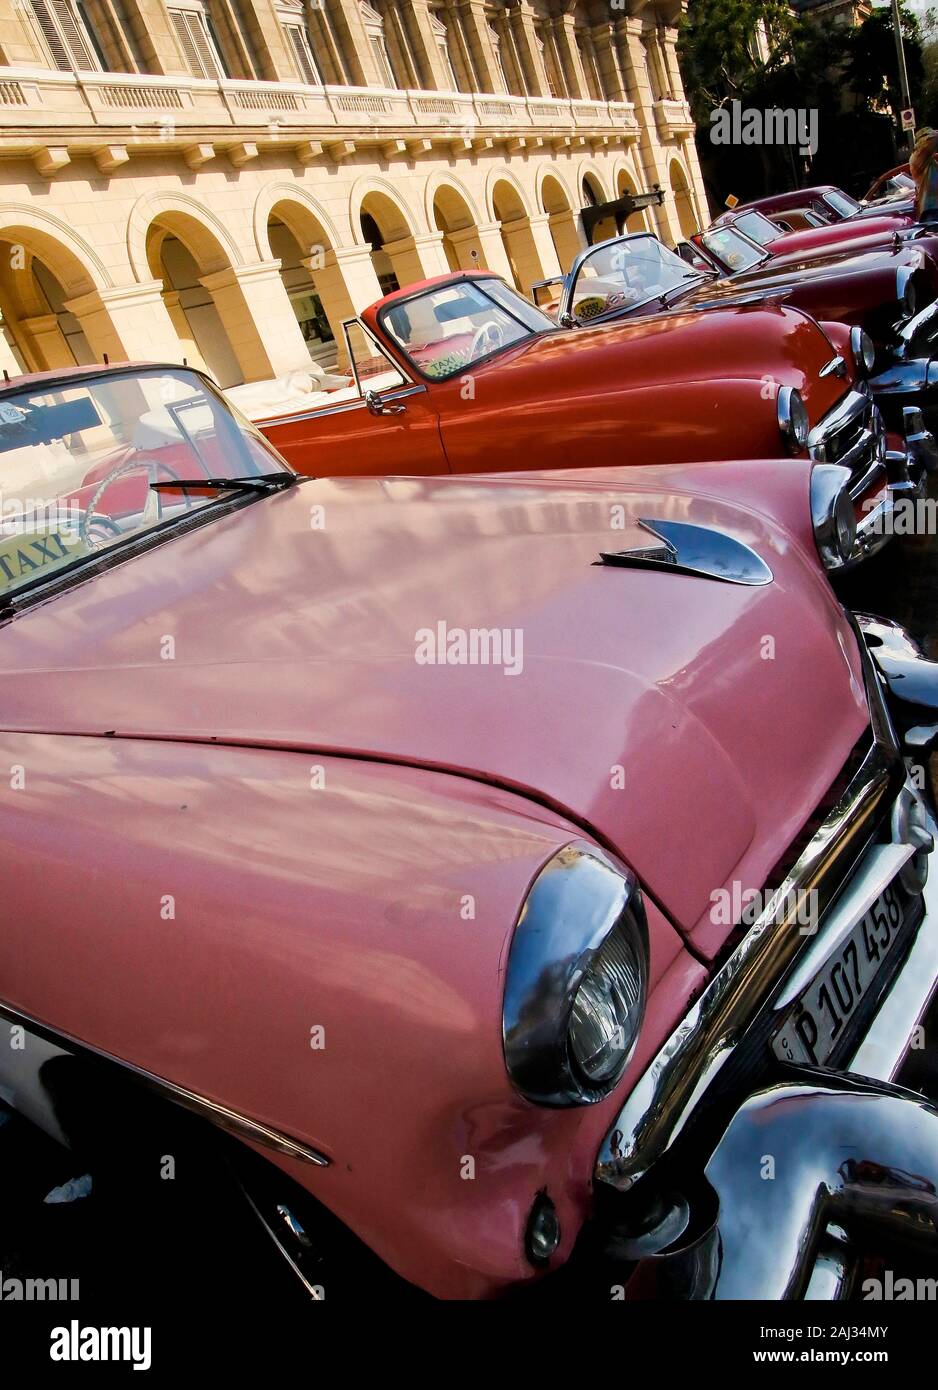 Automobili tradizionali presso la piazza centrale Parque Central a l'Avana, Cuba Foto Stock